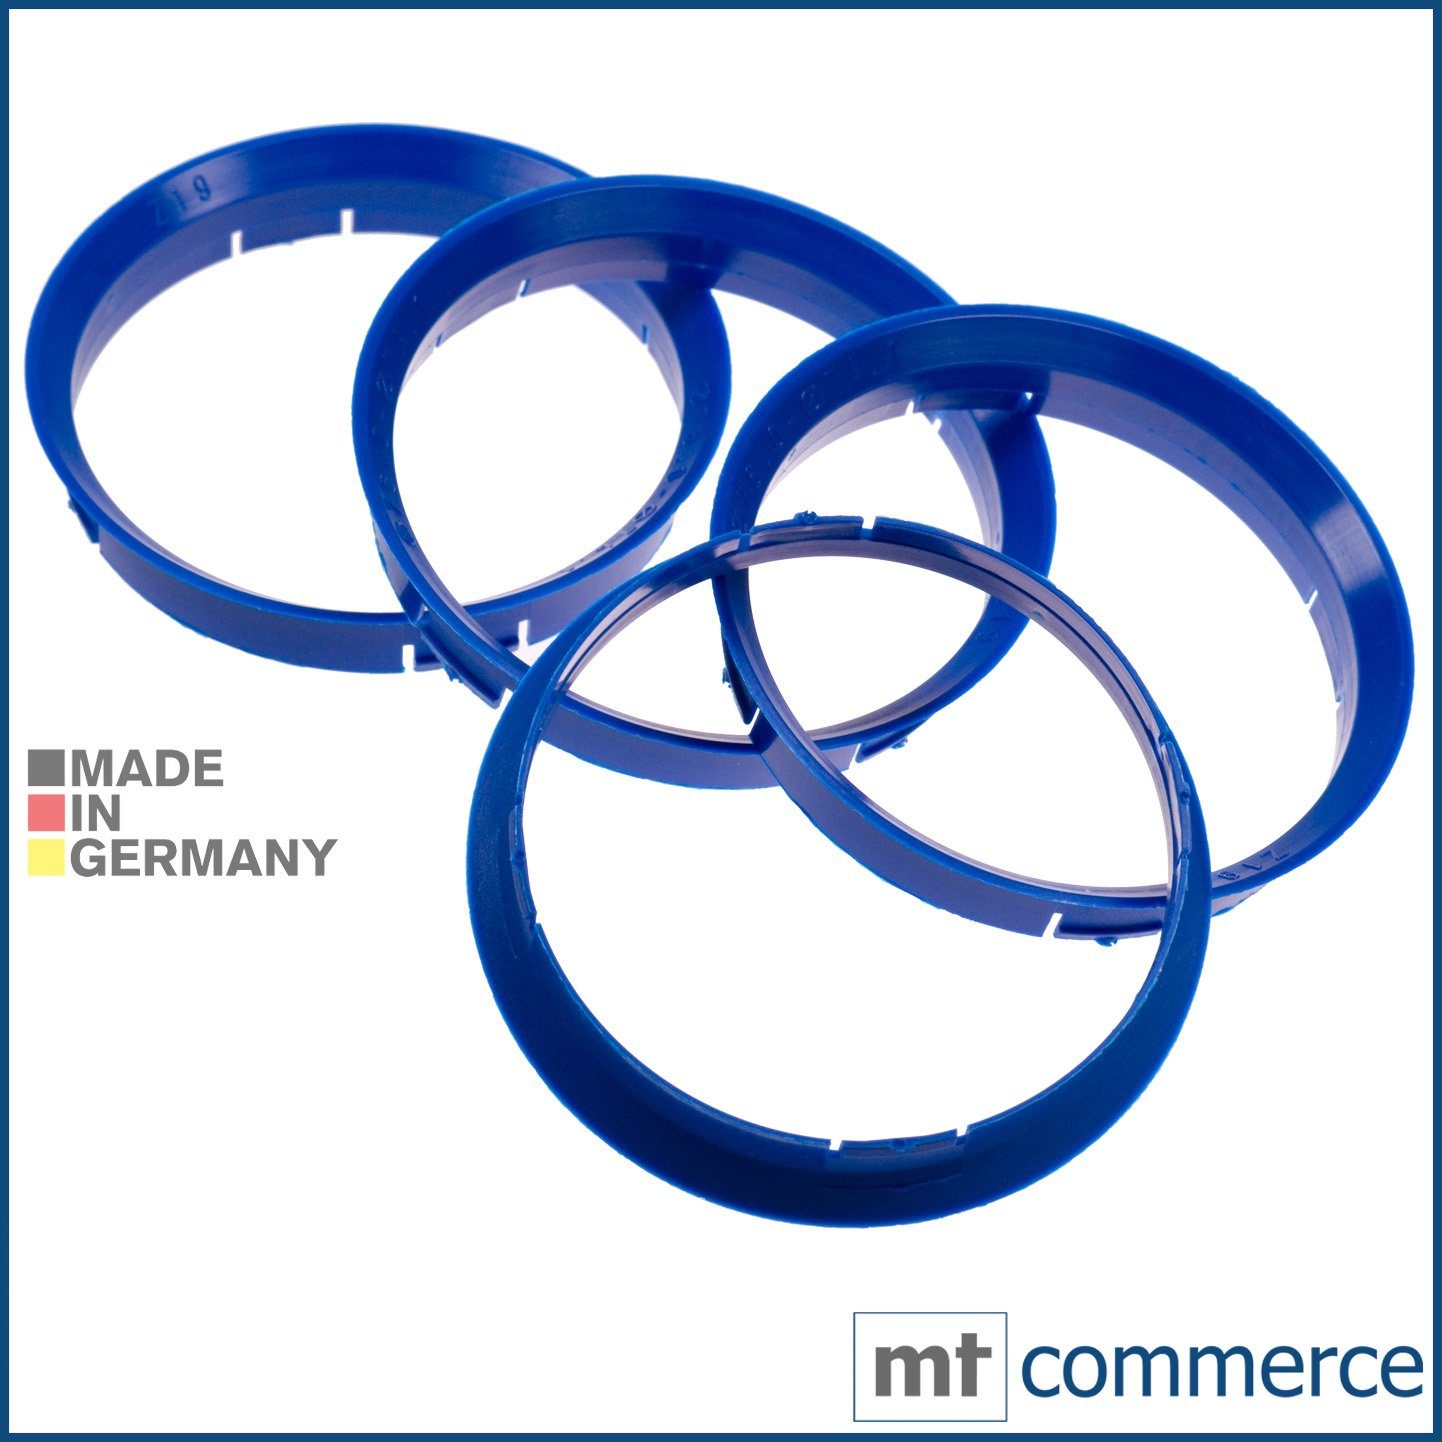 RKC Reifenstift 4X Zentrierringe blau Felgen Ringe Made in Germany, Maße: 76,0 x 74,1 mm